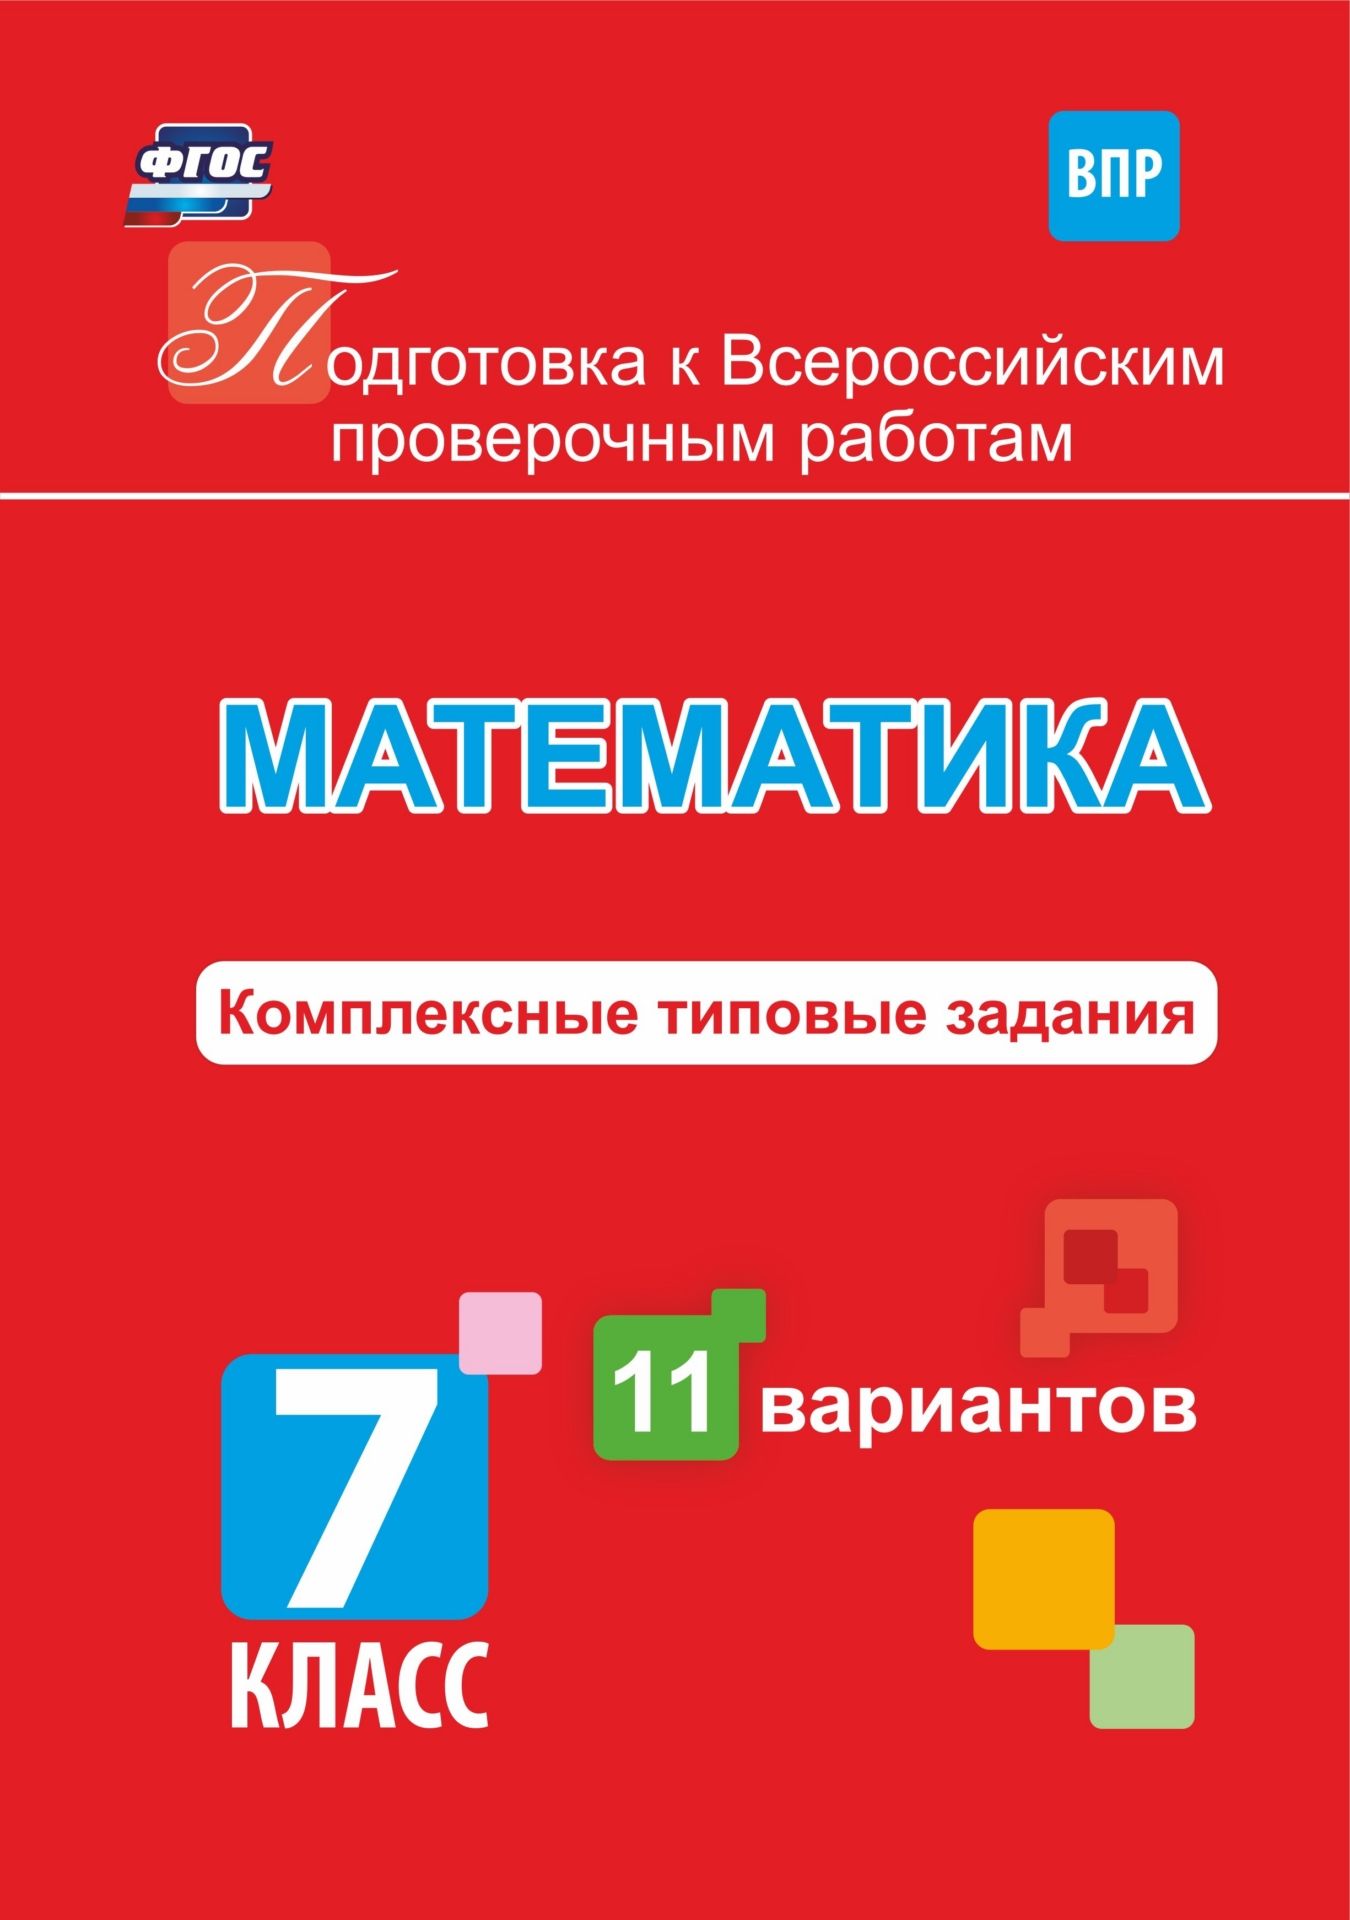 

Подготовка к Всероссийским проверочным работам. Математика. 7 класс: комплексные типовые задания. 11 вариантов